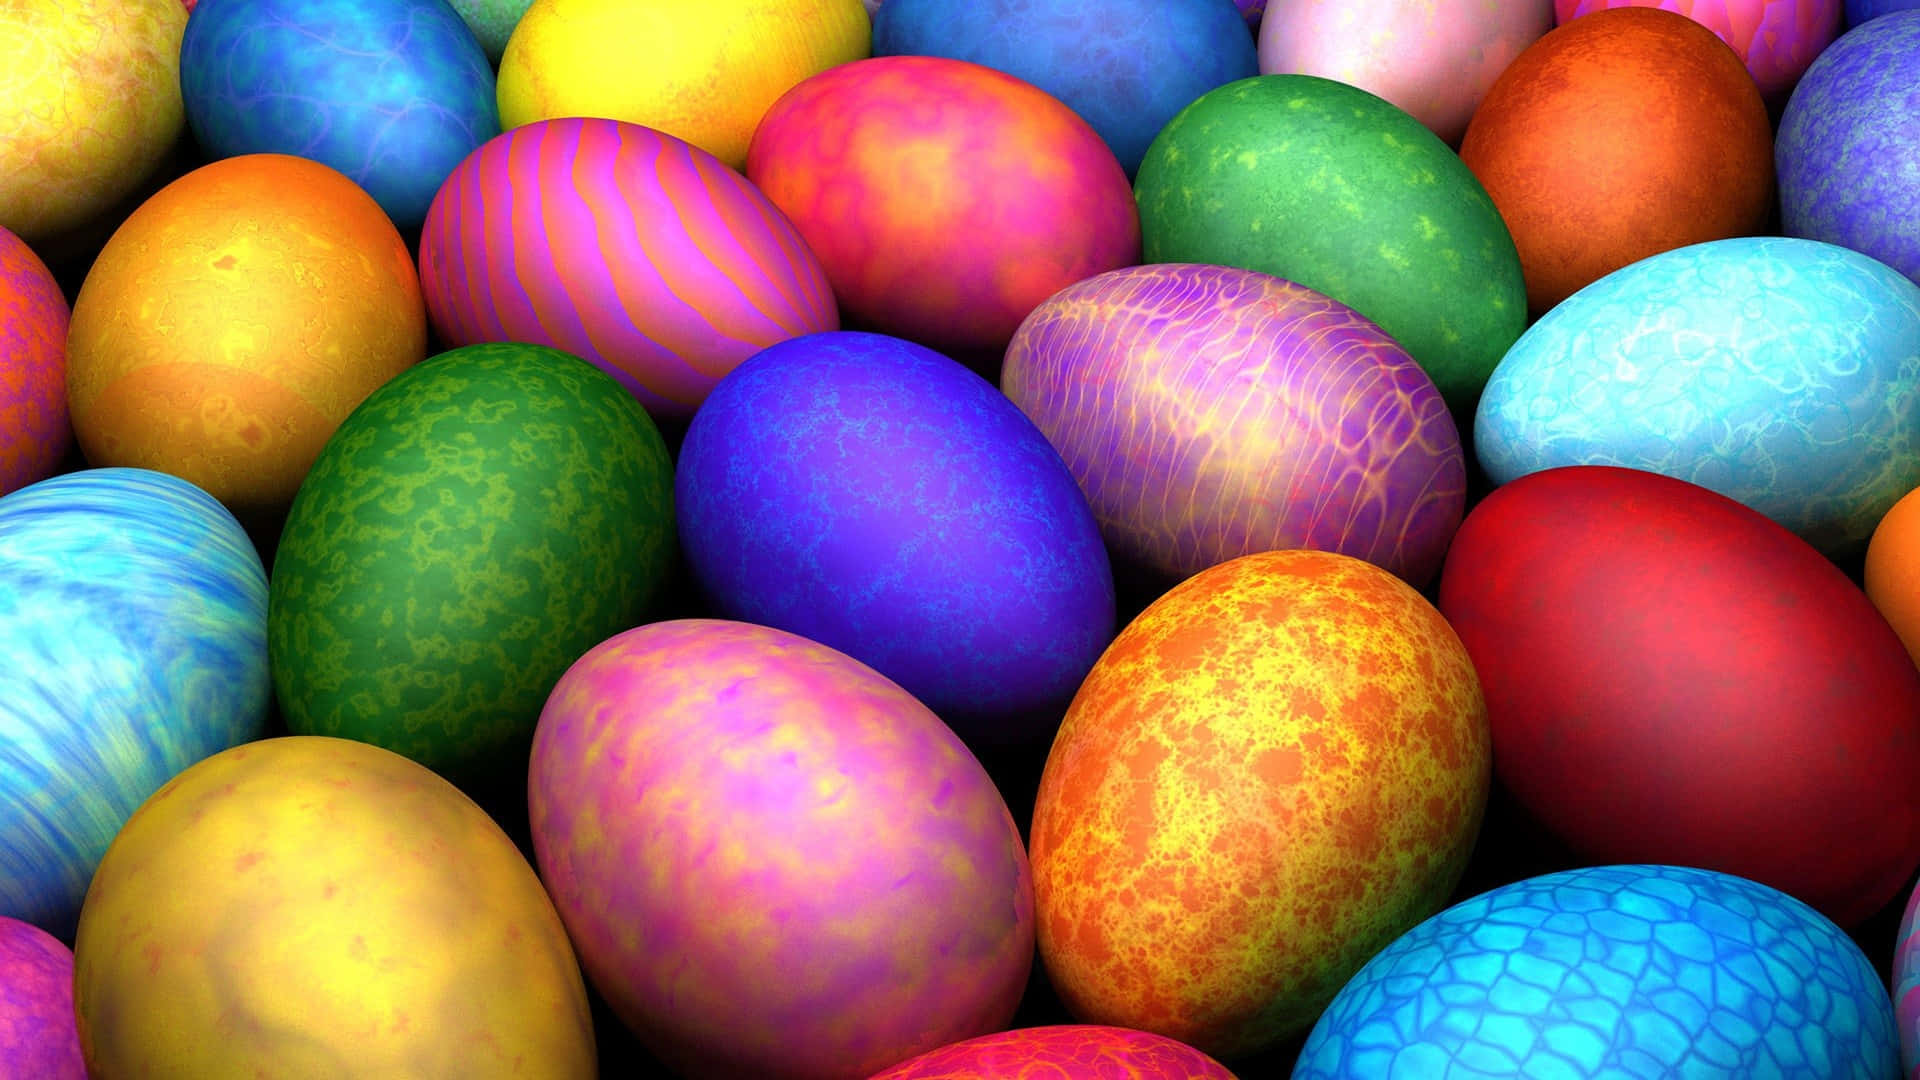 Umgrupo De Ovos De Páscoa Coloridos Estão Dispostos Em Uma Fileira.